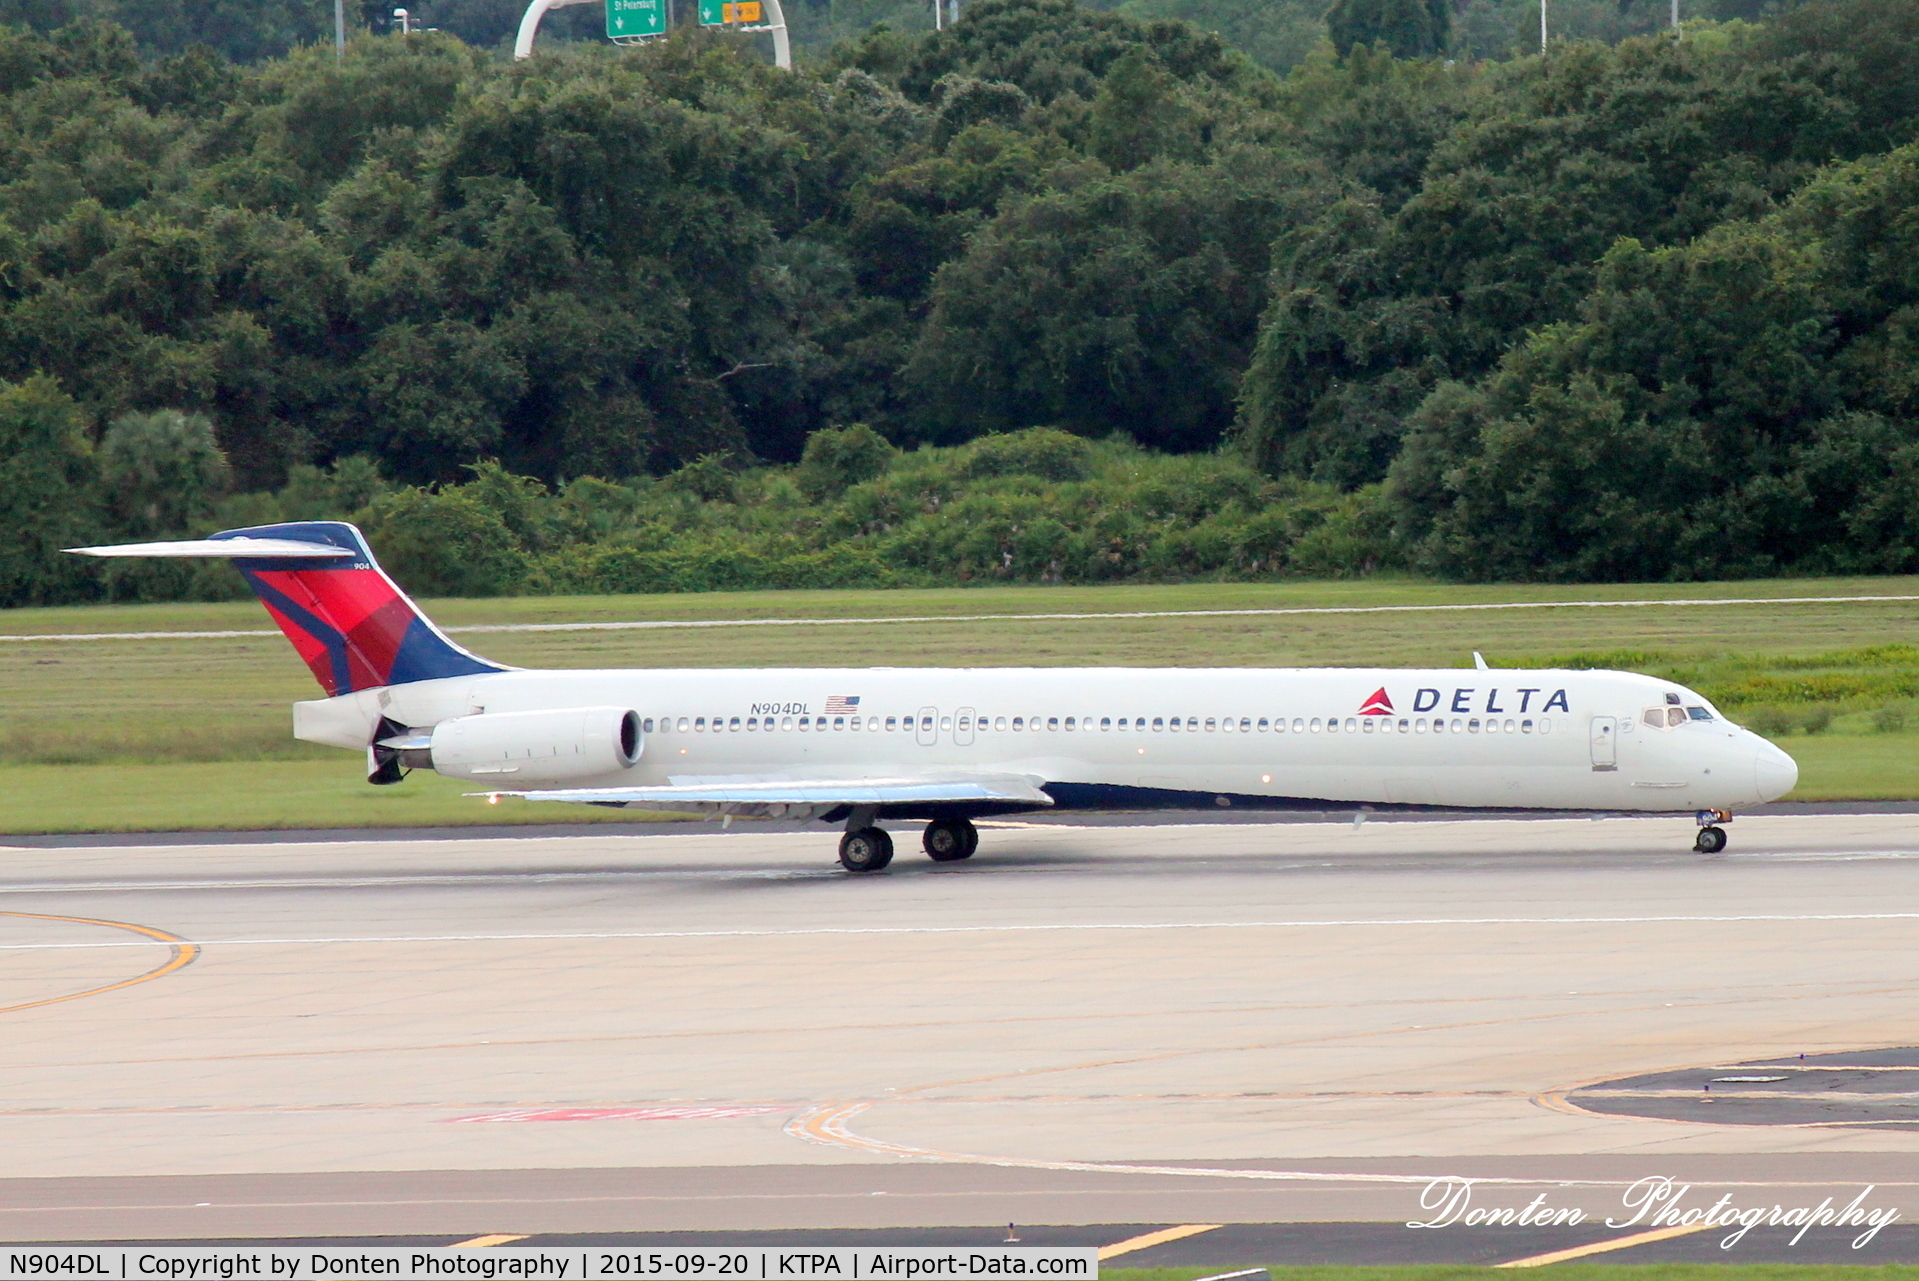 N904DL, 1987 McDonnell Douglas MD-88 C/N 49535, Delta Flight 950 (N904DL) arrives at Tampa International Airport following flight from Hartsfield-Jackson Atlanta International Airport